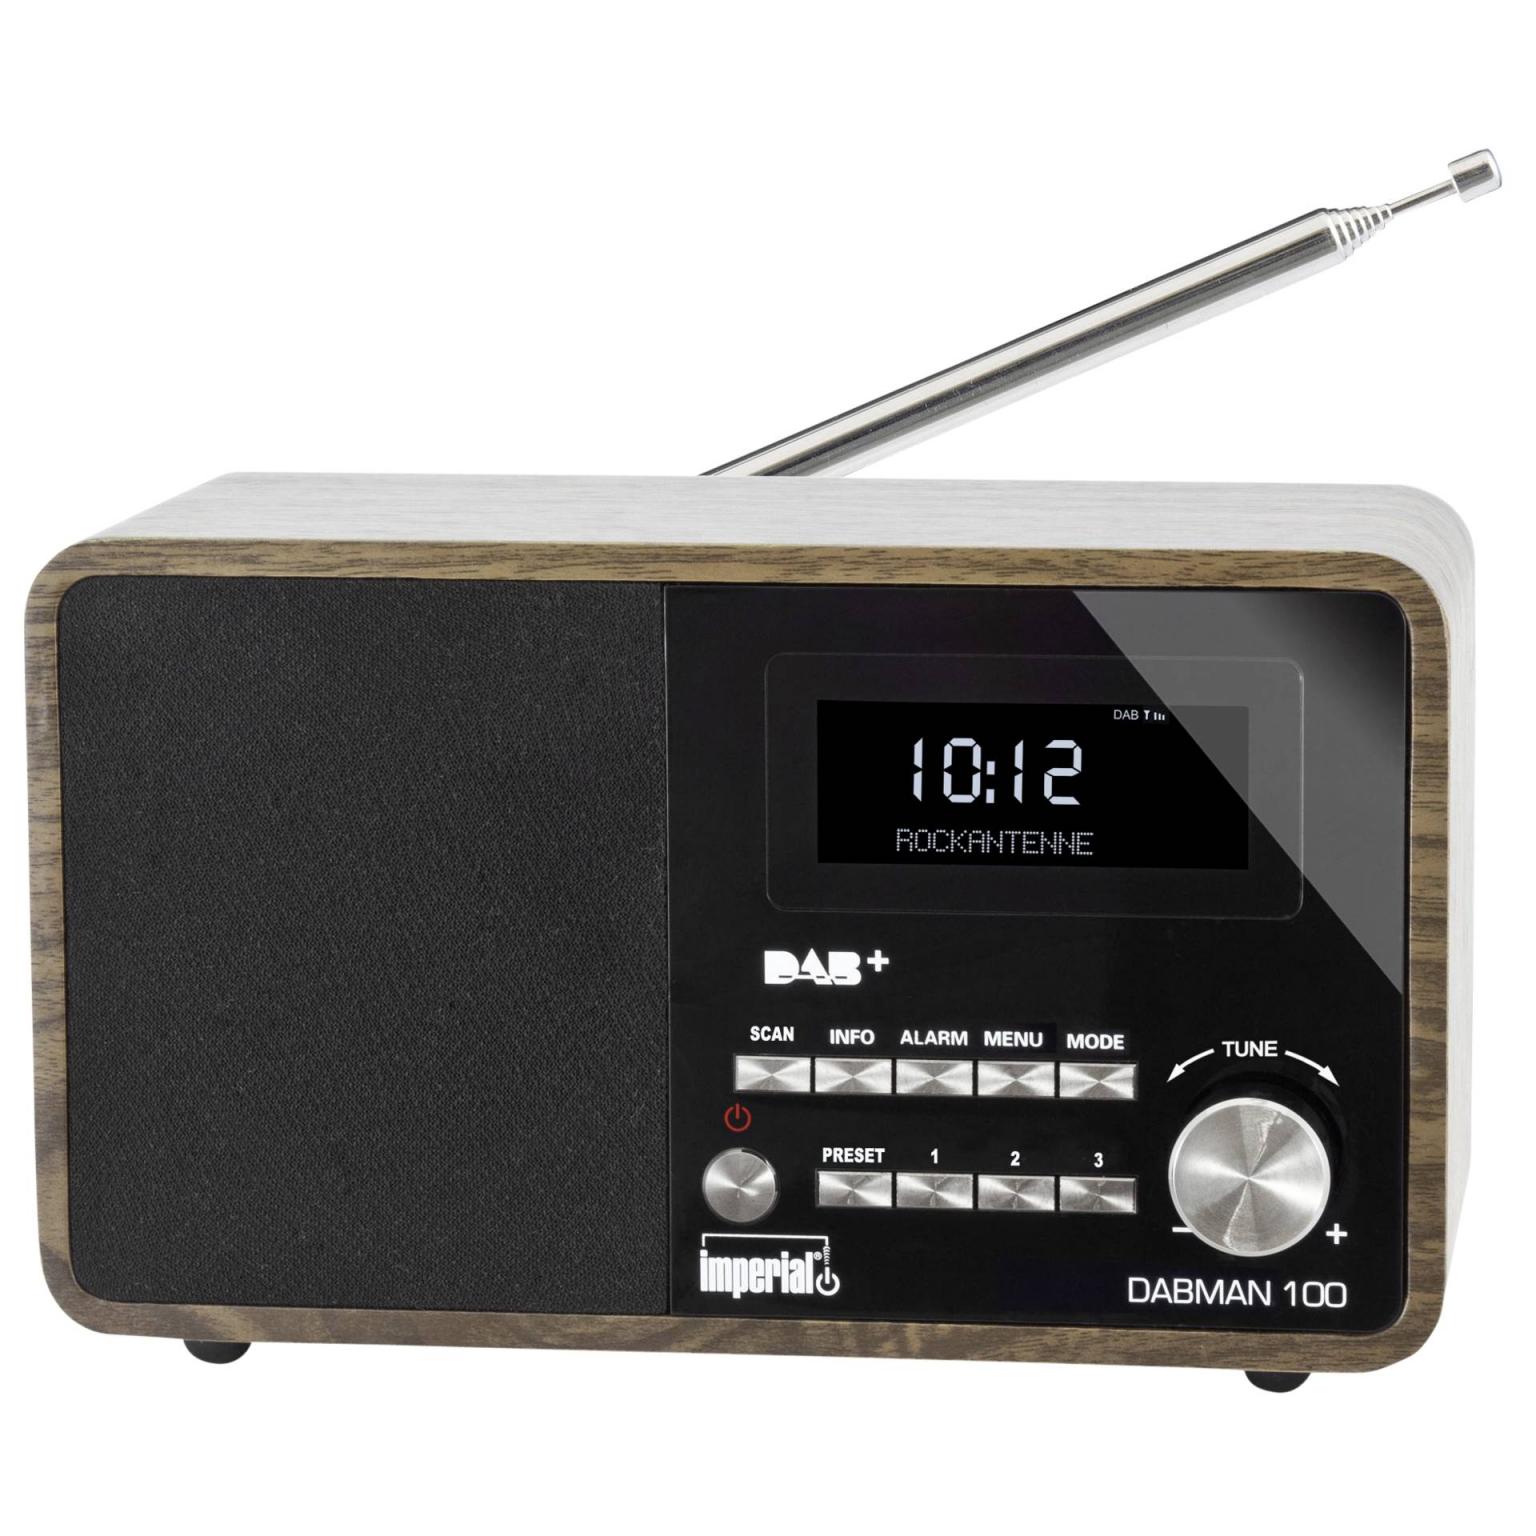 bed filosoof passie DAB+ radio - Merk: Imperial DABMAN 100, Extra: USB 2.0 poorten voor  opladen, Afstandsbediening, Audio ingang: Aux aansluiting, Voeding: 230V,  Radio: FM, DAB+, Voorkeurzenders: 10 DAB+ en 10 FM.